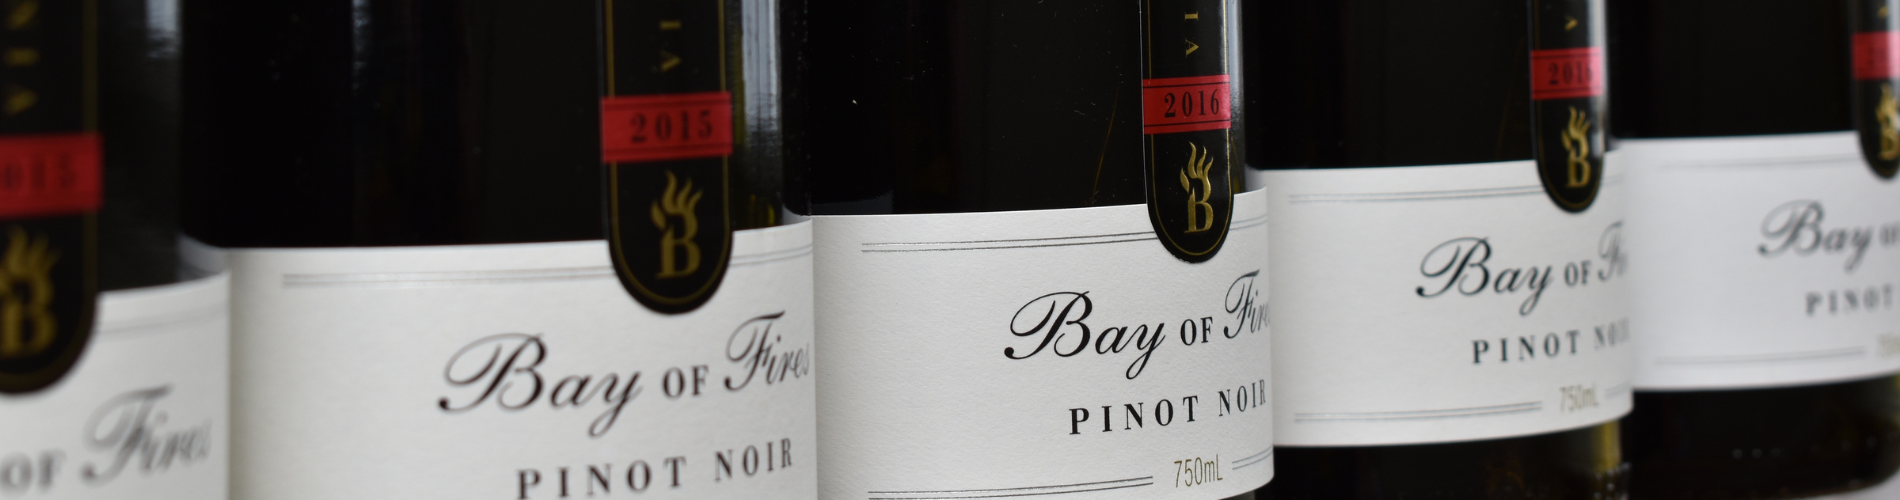 Bay of Fires Pinot Noir